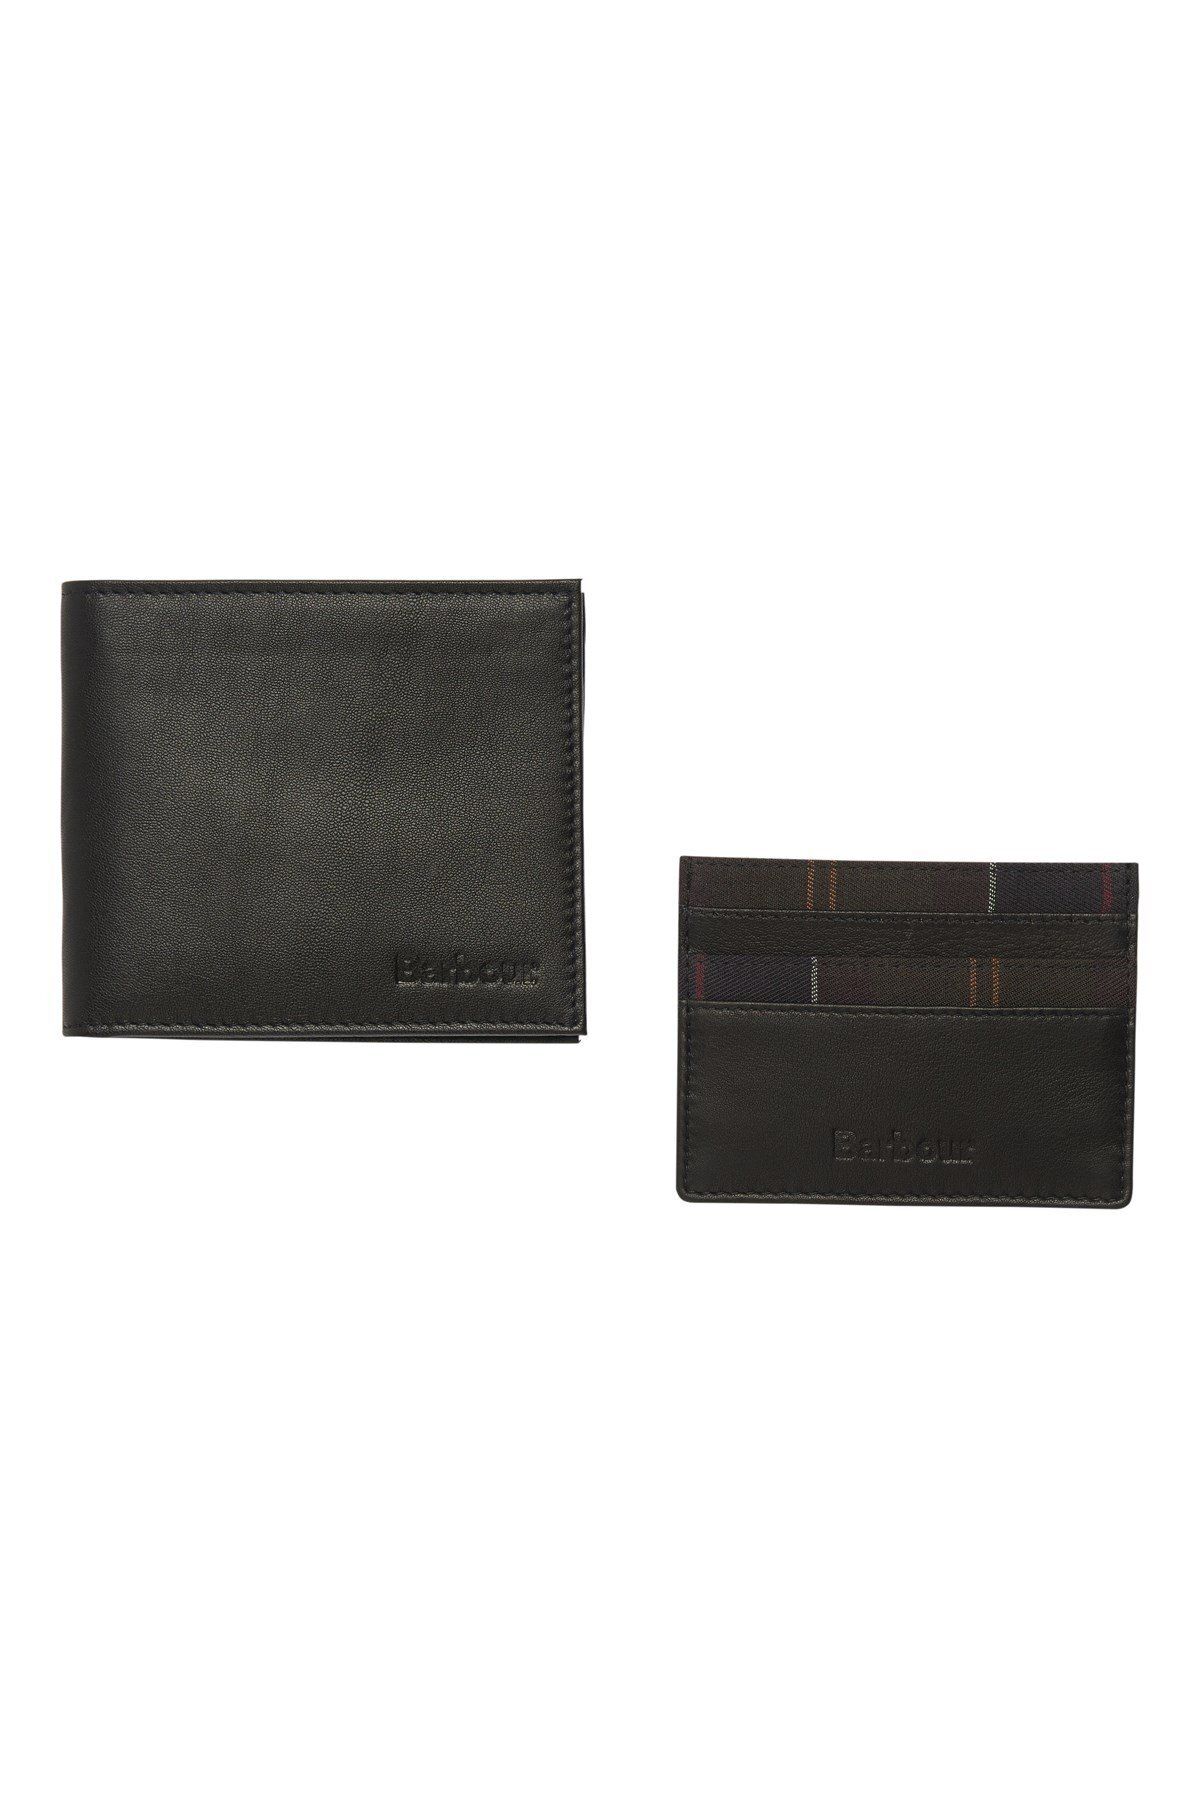 Barbour Glanton Wallet/card Holder Set Bk11 Black